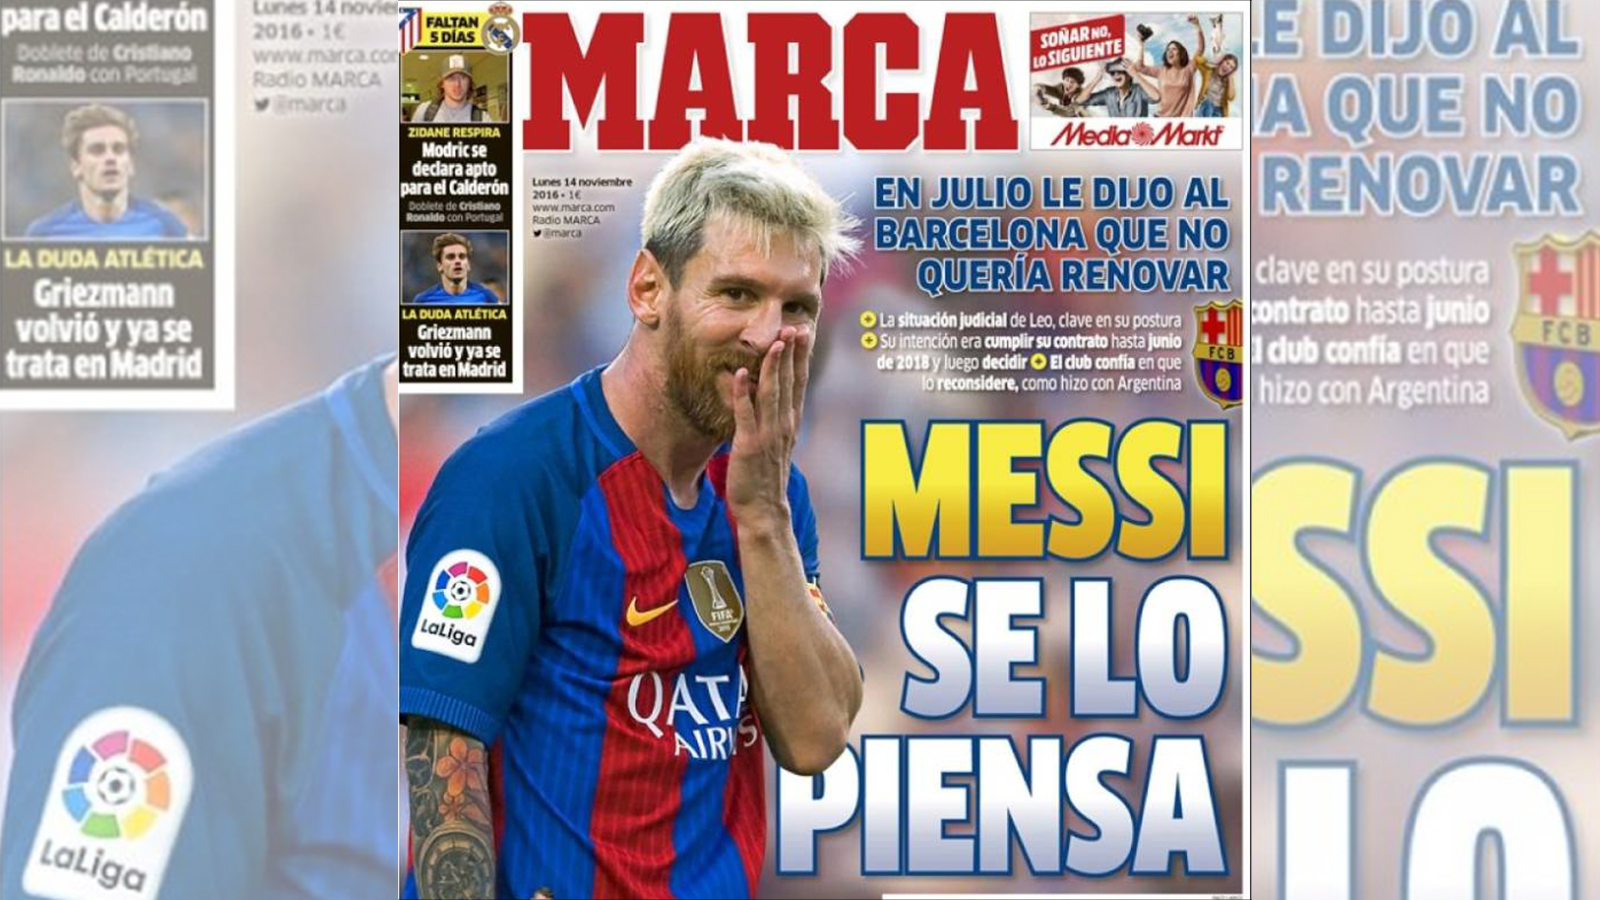 ‪‬ خبر عدم تجديد ميسي لعقده مع برشلونة تصدر غلاف صحيفة ماركا اليوم(الصحافة الإسبانية)